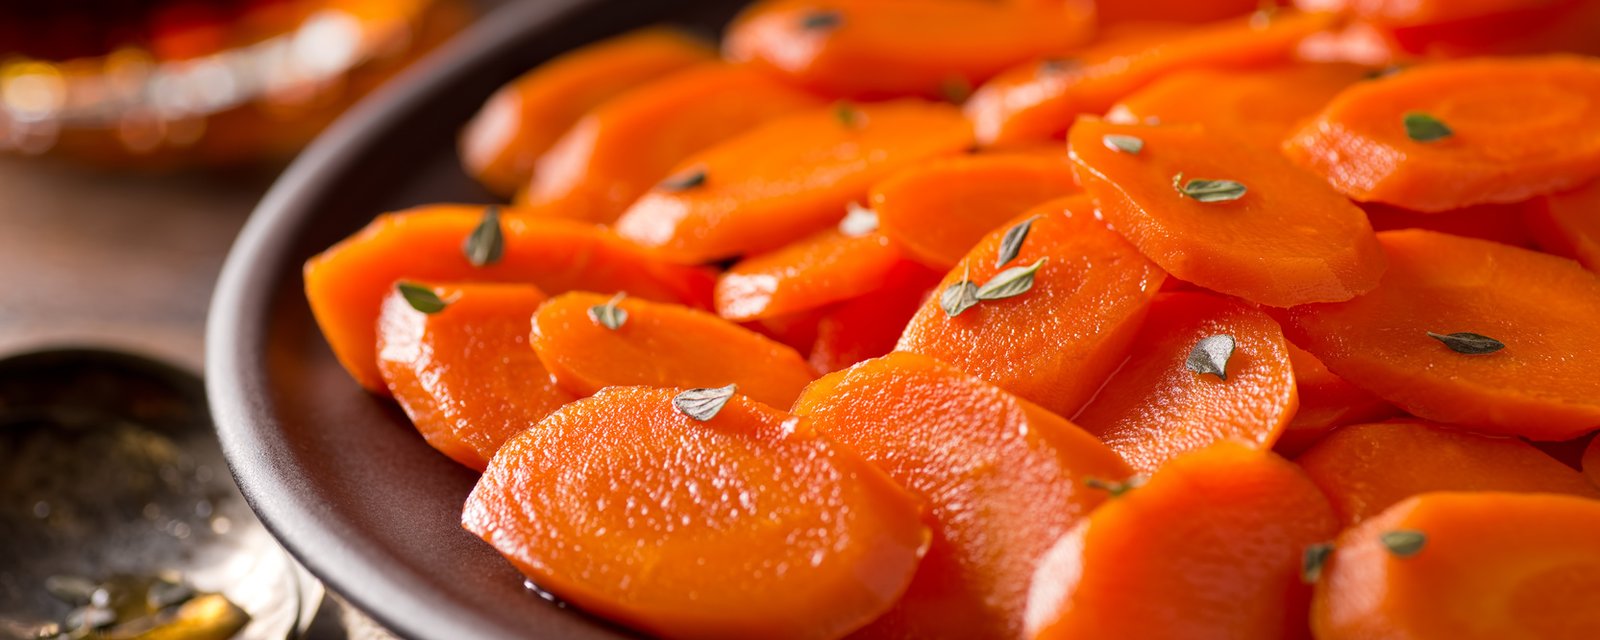 Fini les carottes plates... Ces carottes glacées à l'orange et au gingembre sont SAISISSANTES! 